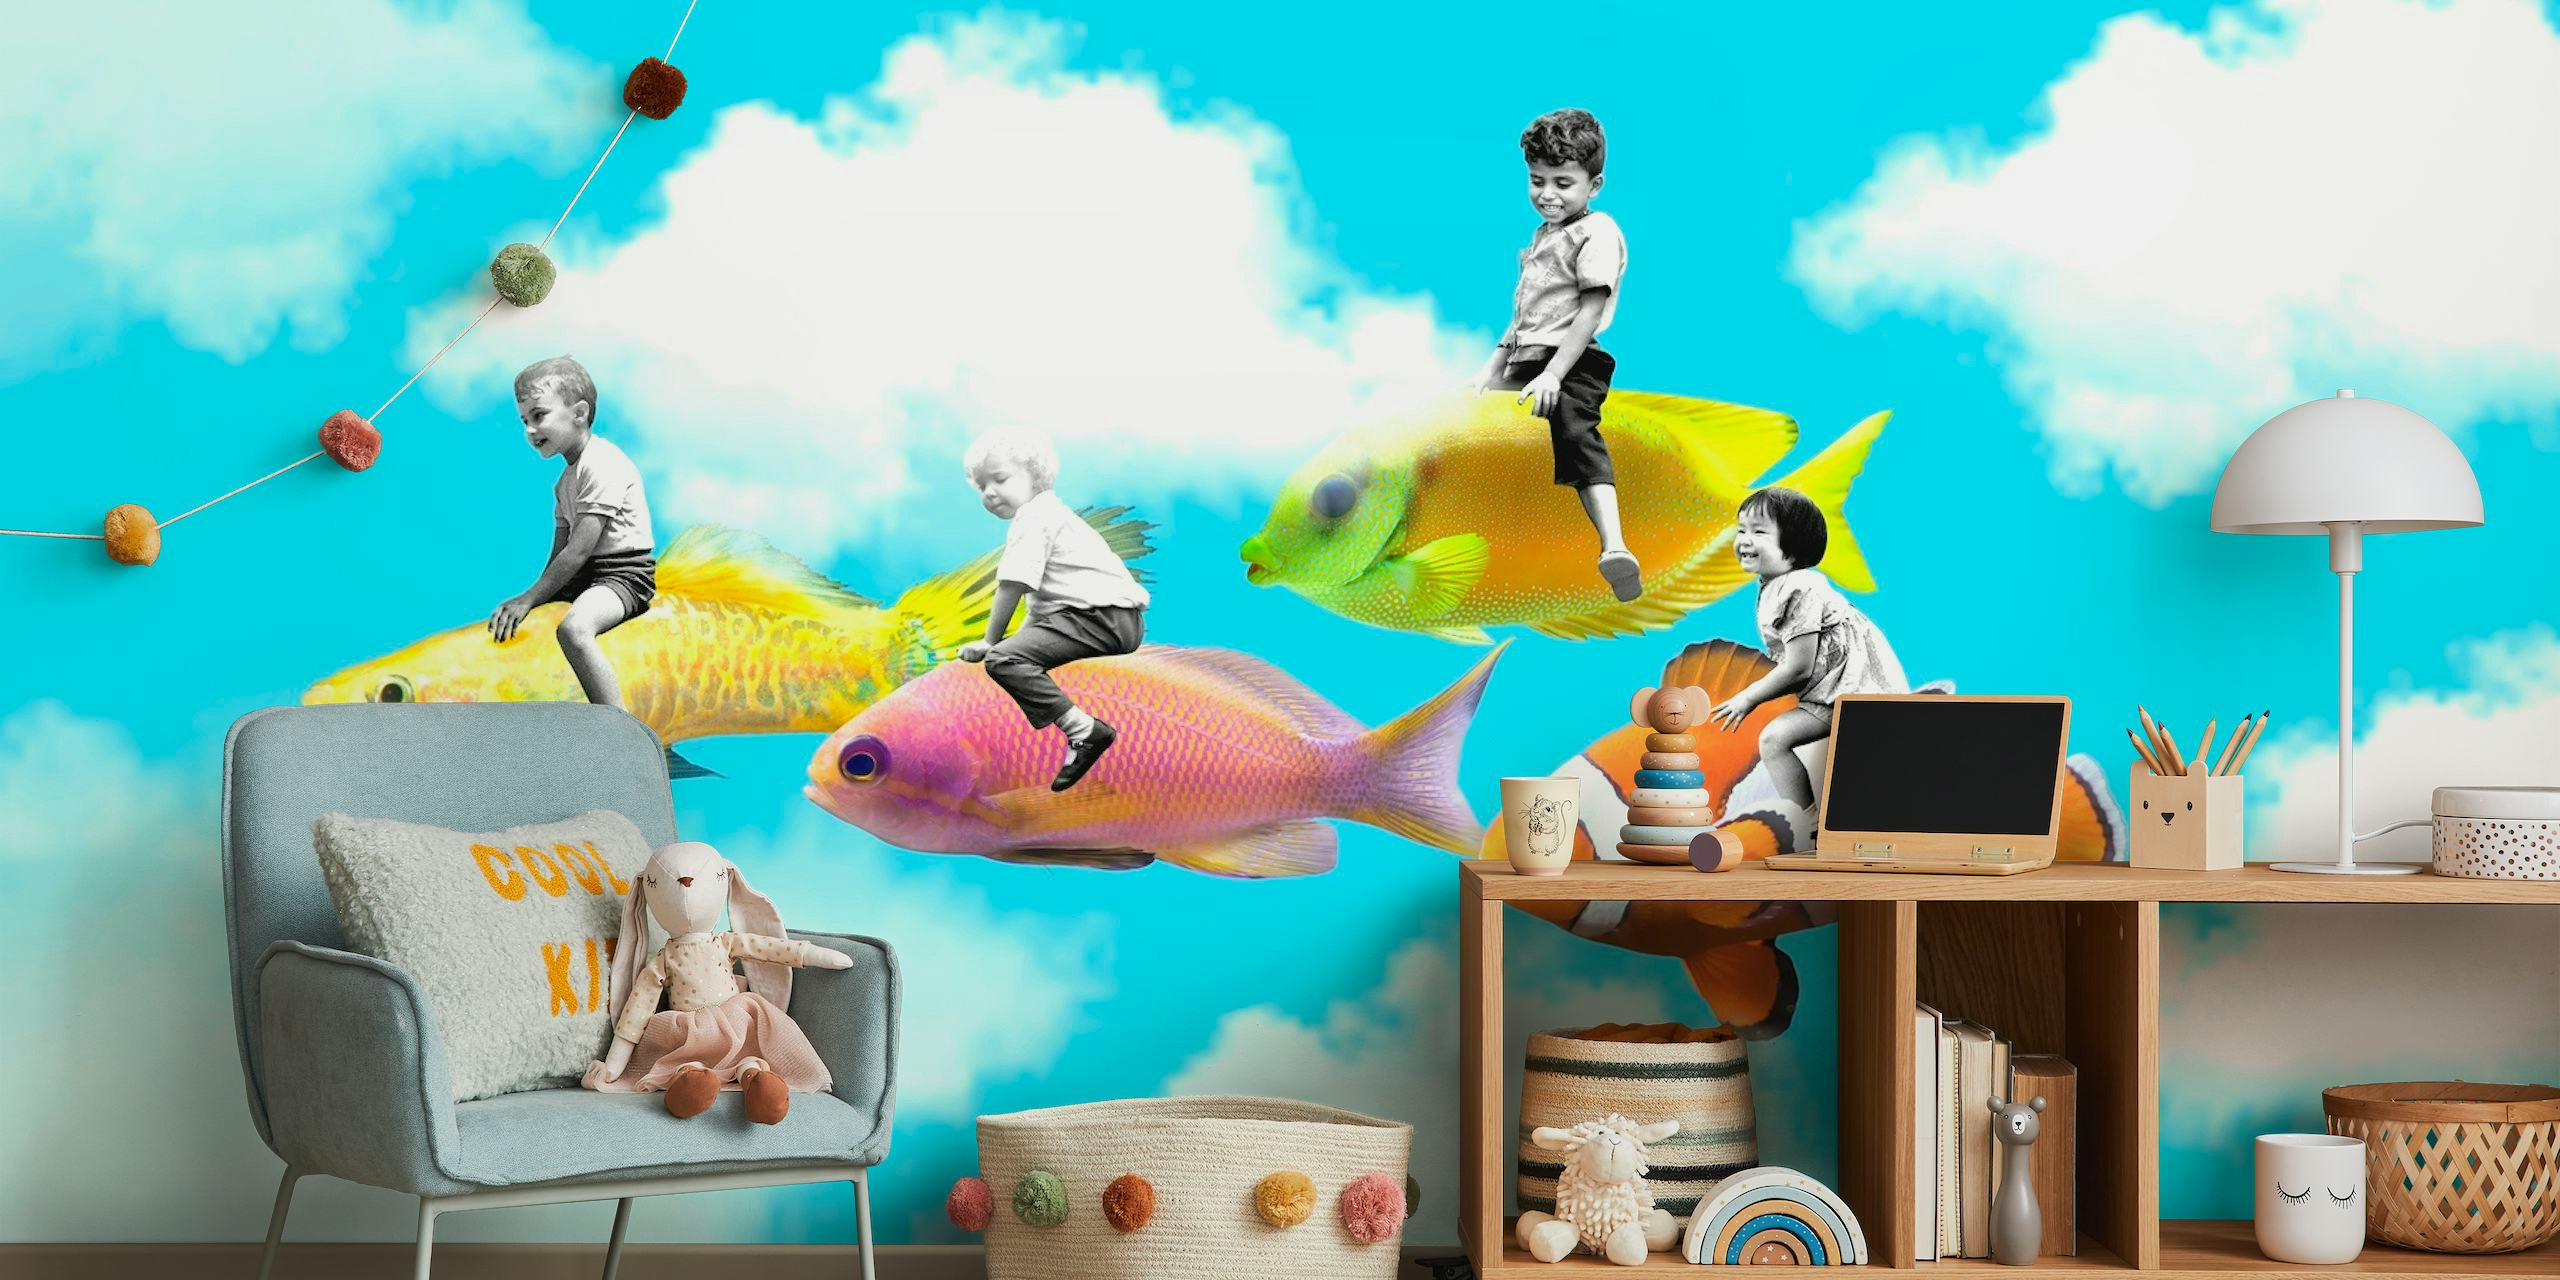 Bambini che cavalcano pesci colorati nel murale 'I bambini del mondo' su uno sfondo blu cielo